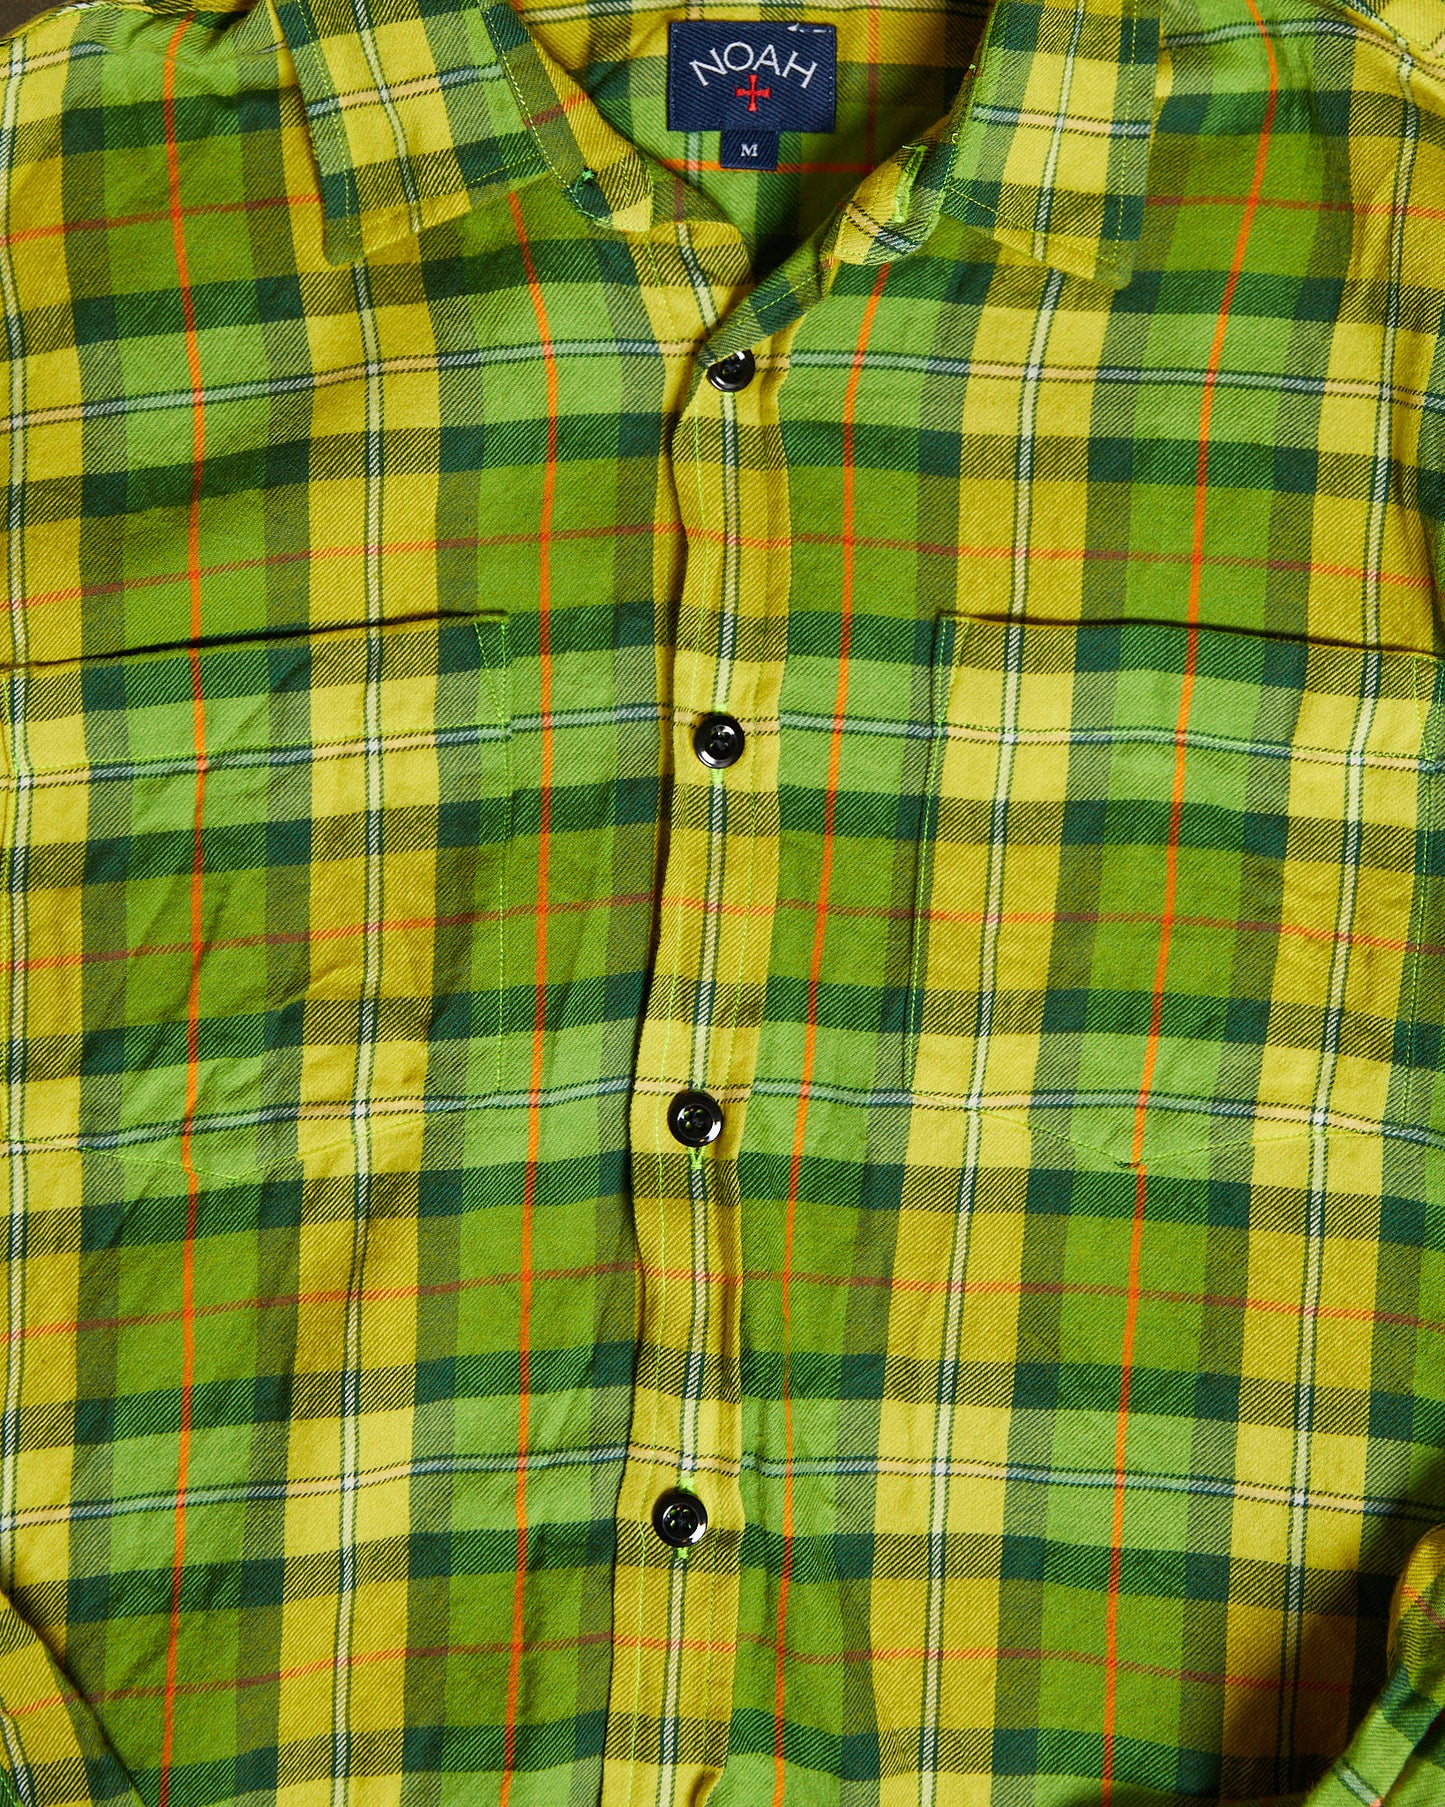 Noah Lightweight Flannel Shirt green yellow